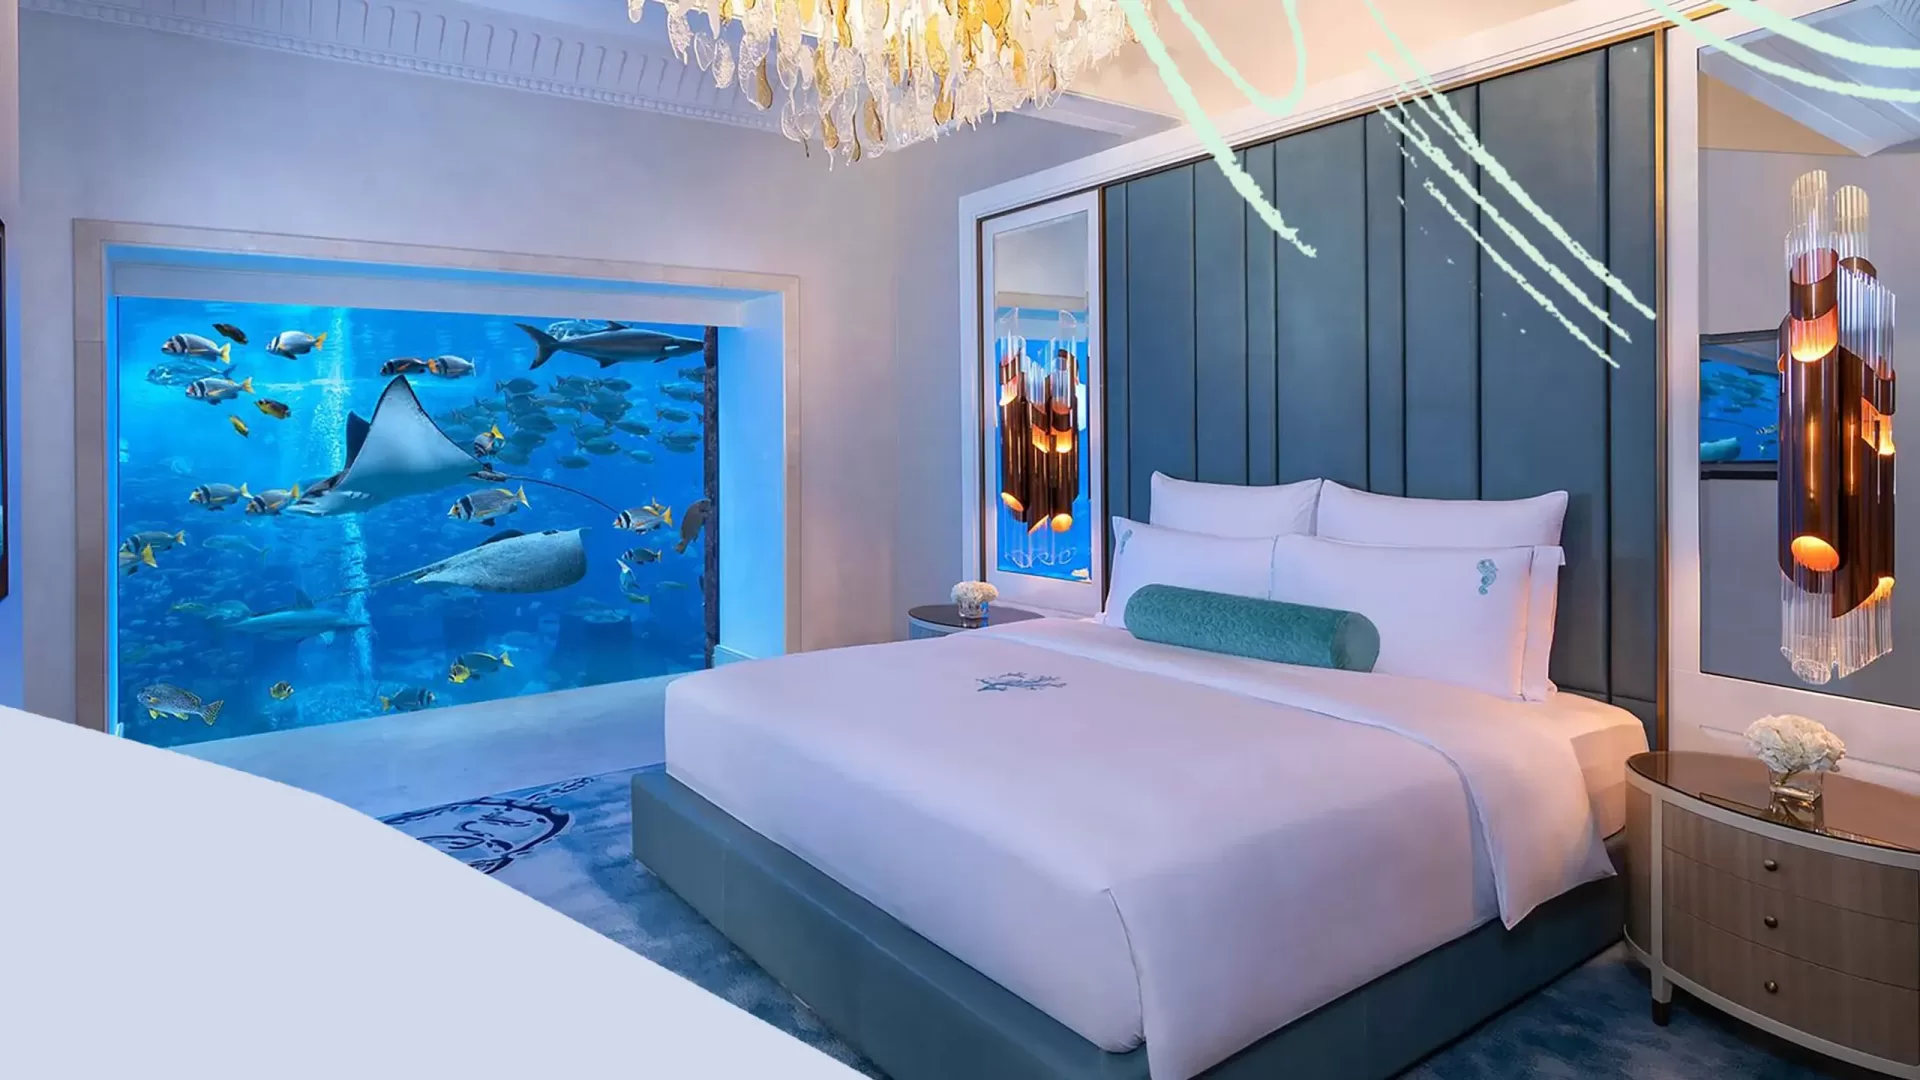 Bedroom Area of Underwater Hotel